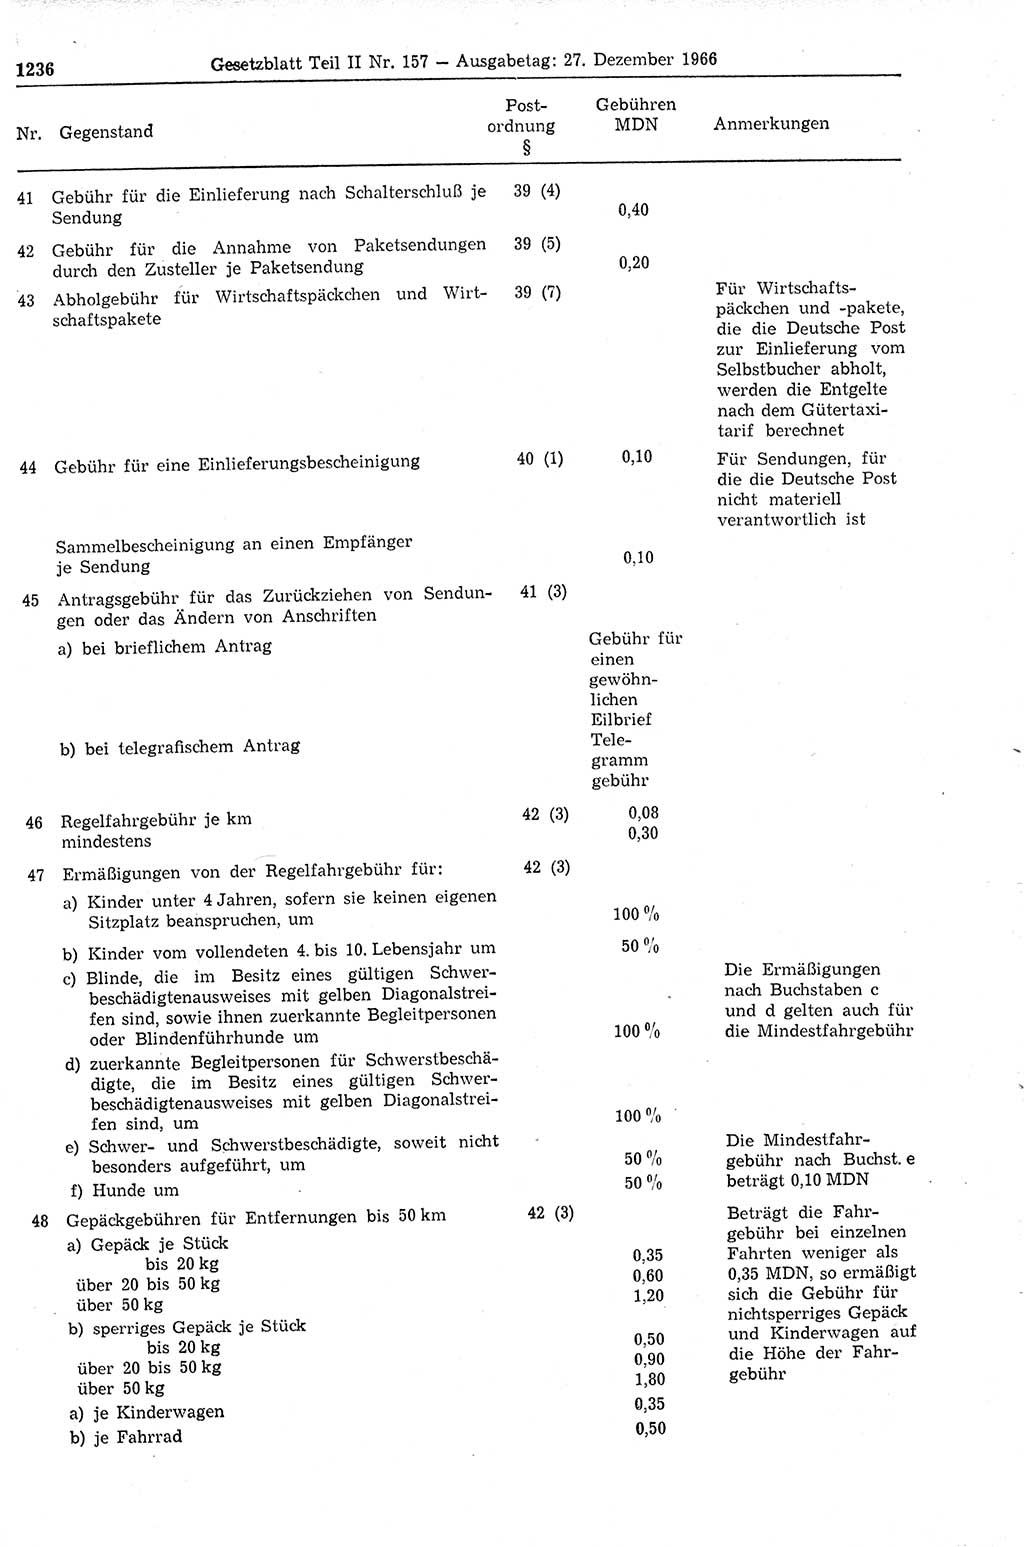 Gesetzblatt (GBl.) der Deutschen Demokratischen Republik (DDR) Teil ⅠⅠ 1966, Seite 1236 (GBl. DDR ⅠⅠ 1966, S. 1236)